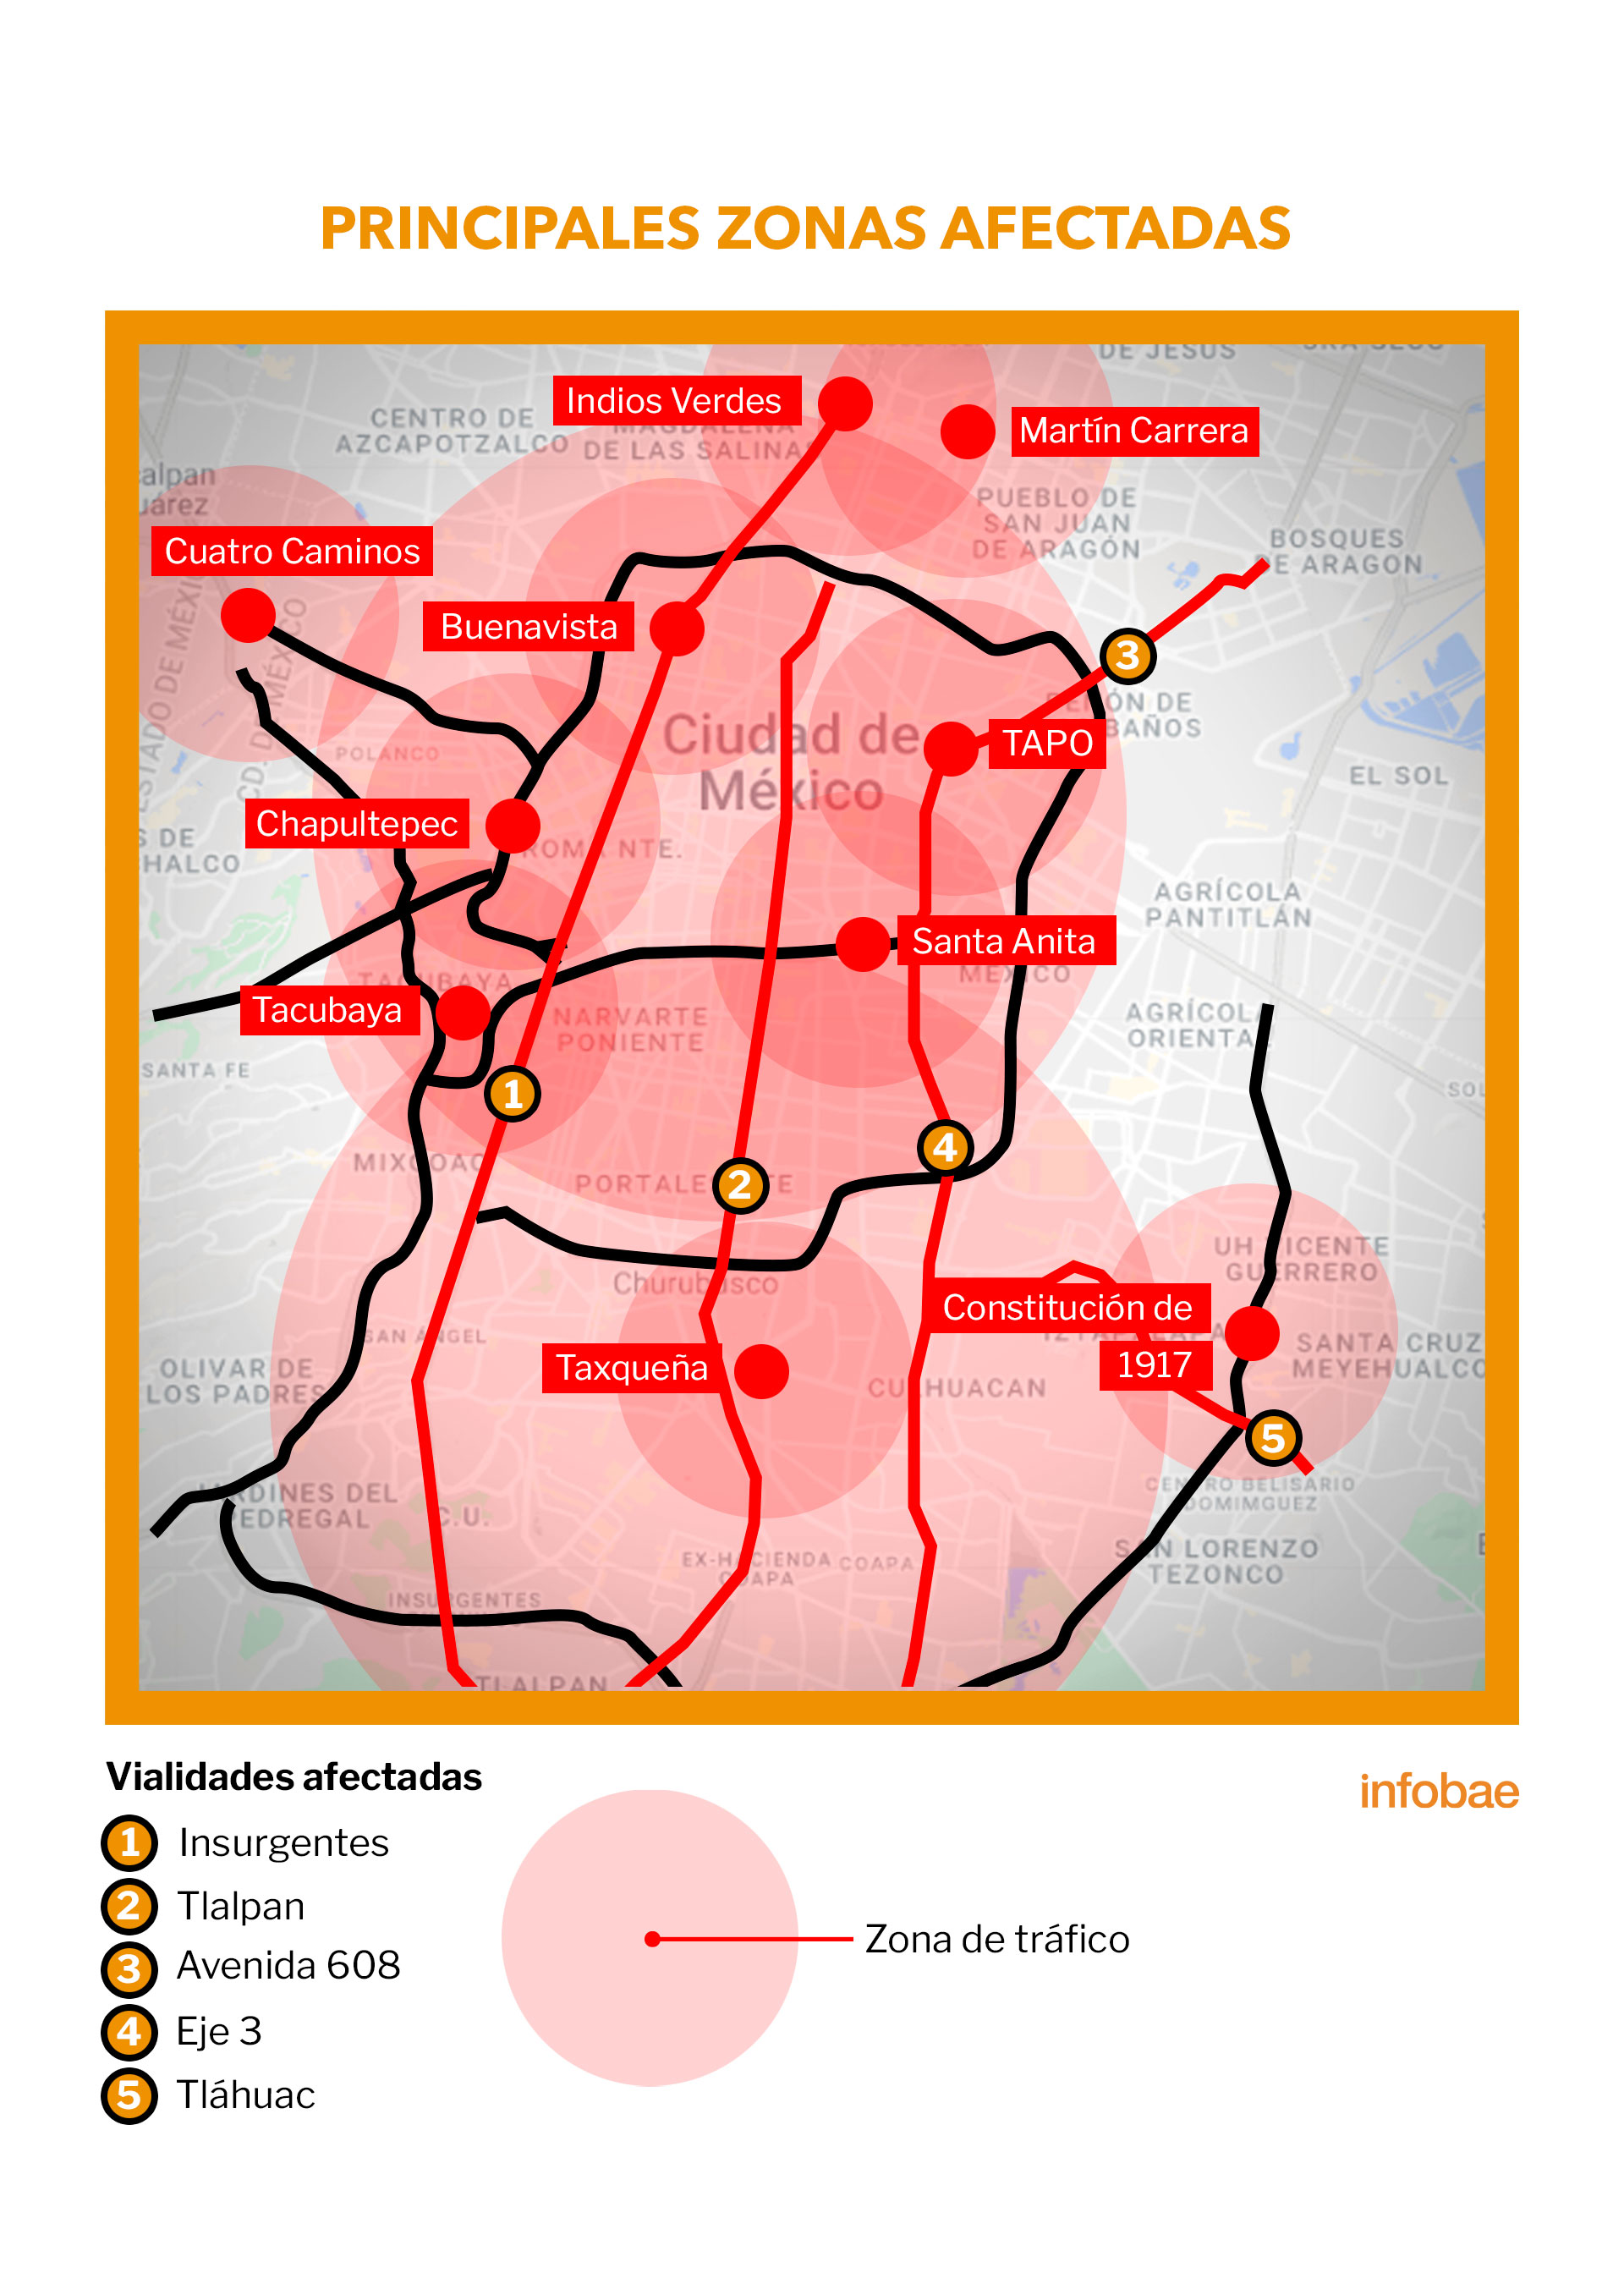 Las vialidades más afectadas serán Calzada de Tlalpan, Insurgentes, Avenida 608, Eje 3 y Tláhuac. Imagen: Infobae